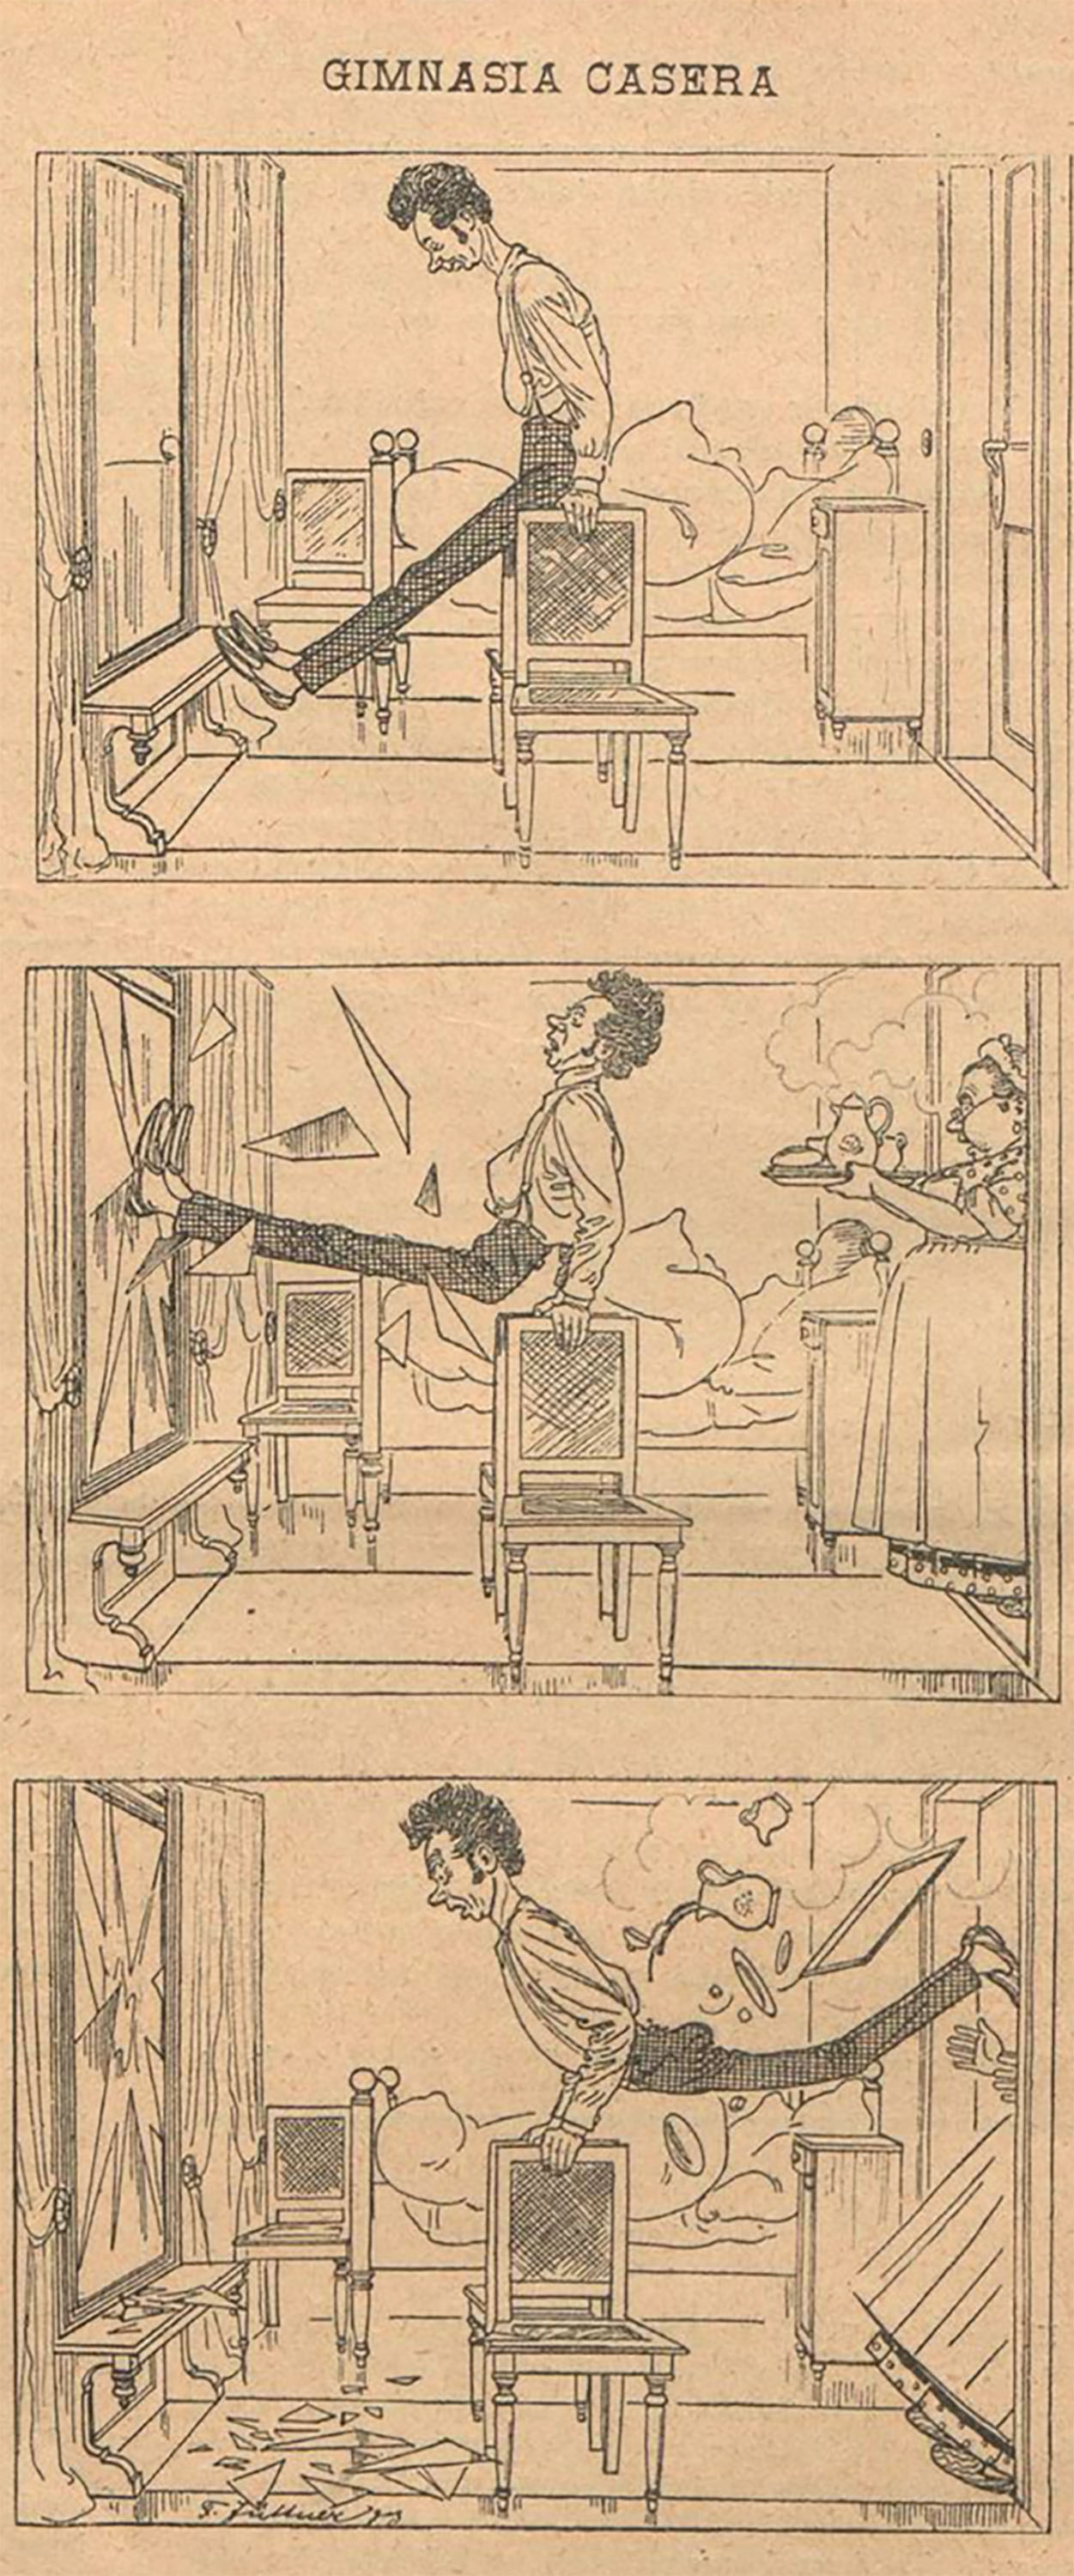 “Composición humorística”, La Hormiga de Oro, 31 de mayo de 1894, p. 318.